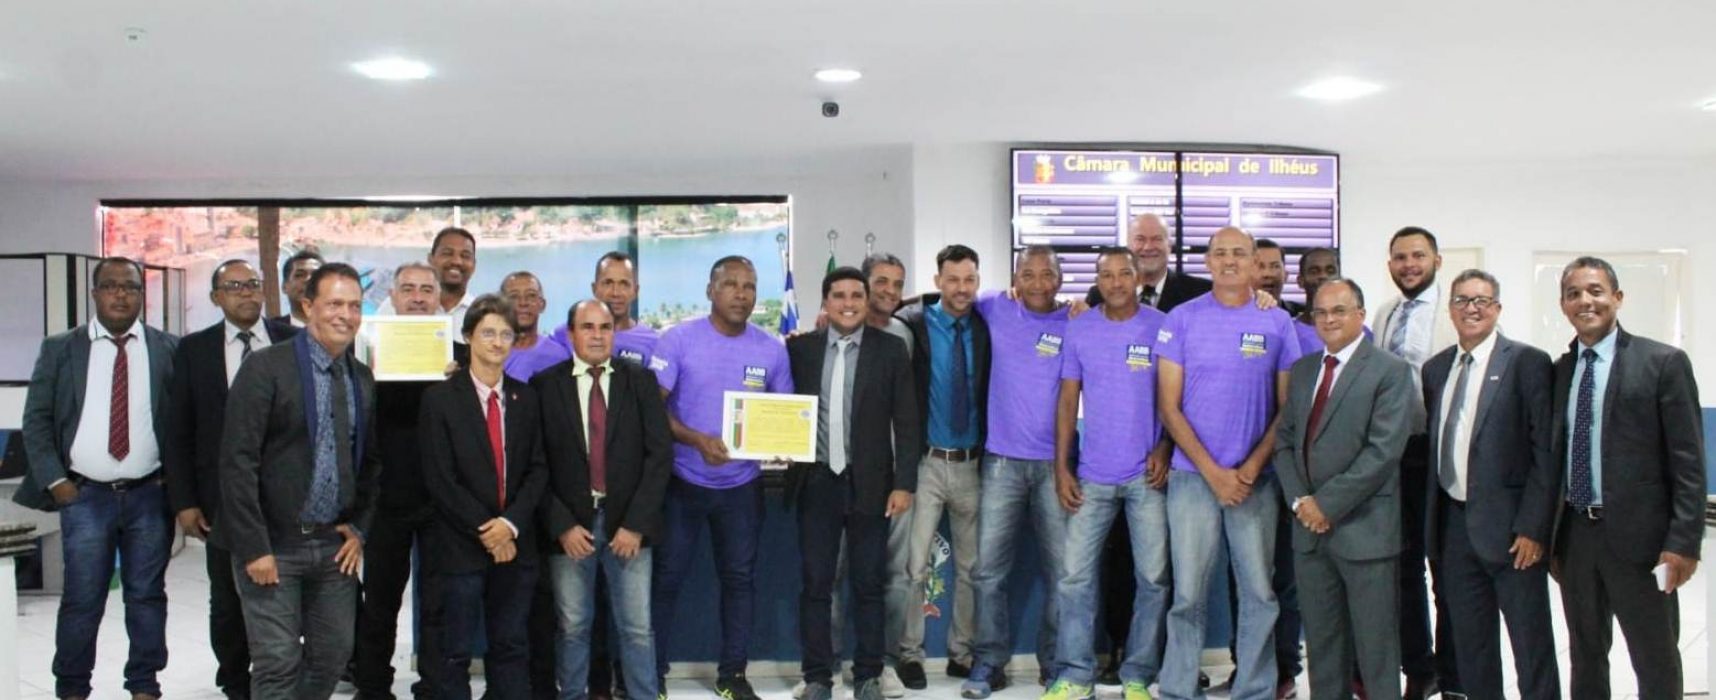 Equipe de futebol Sênior da AABB é homenageada na Câmara de Ilhéus